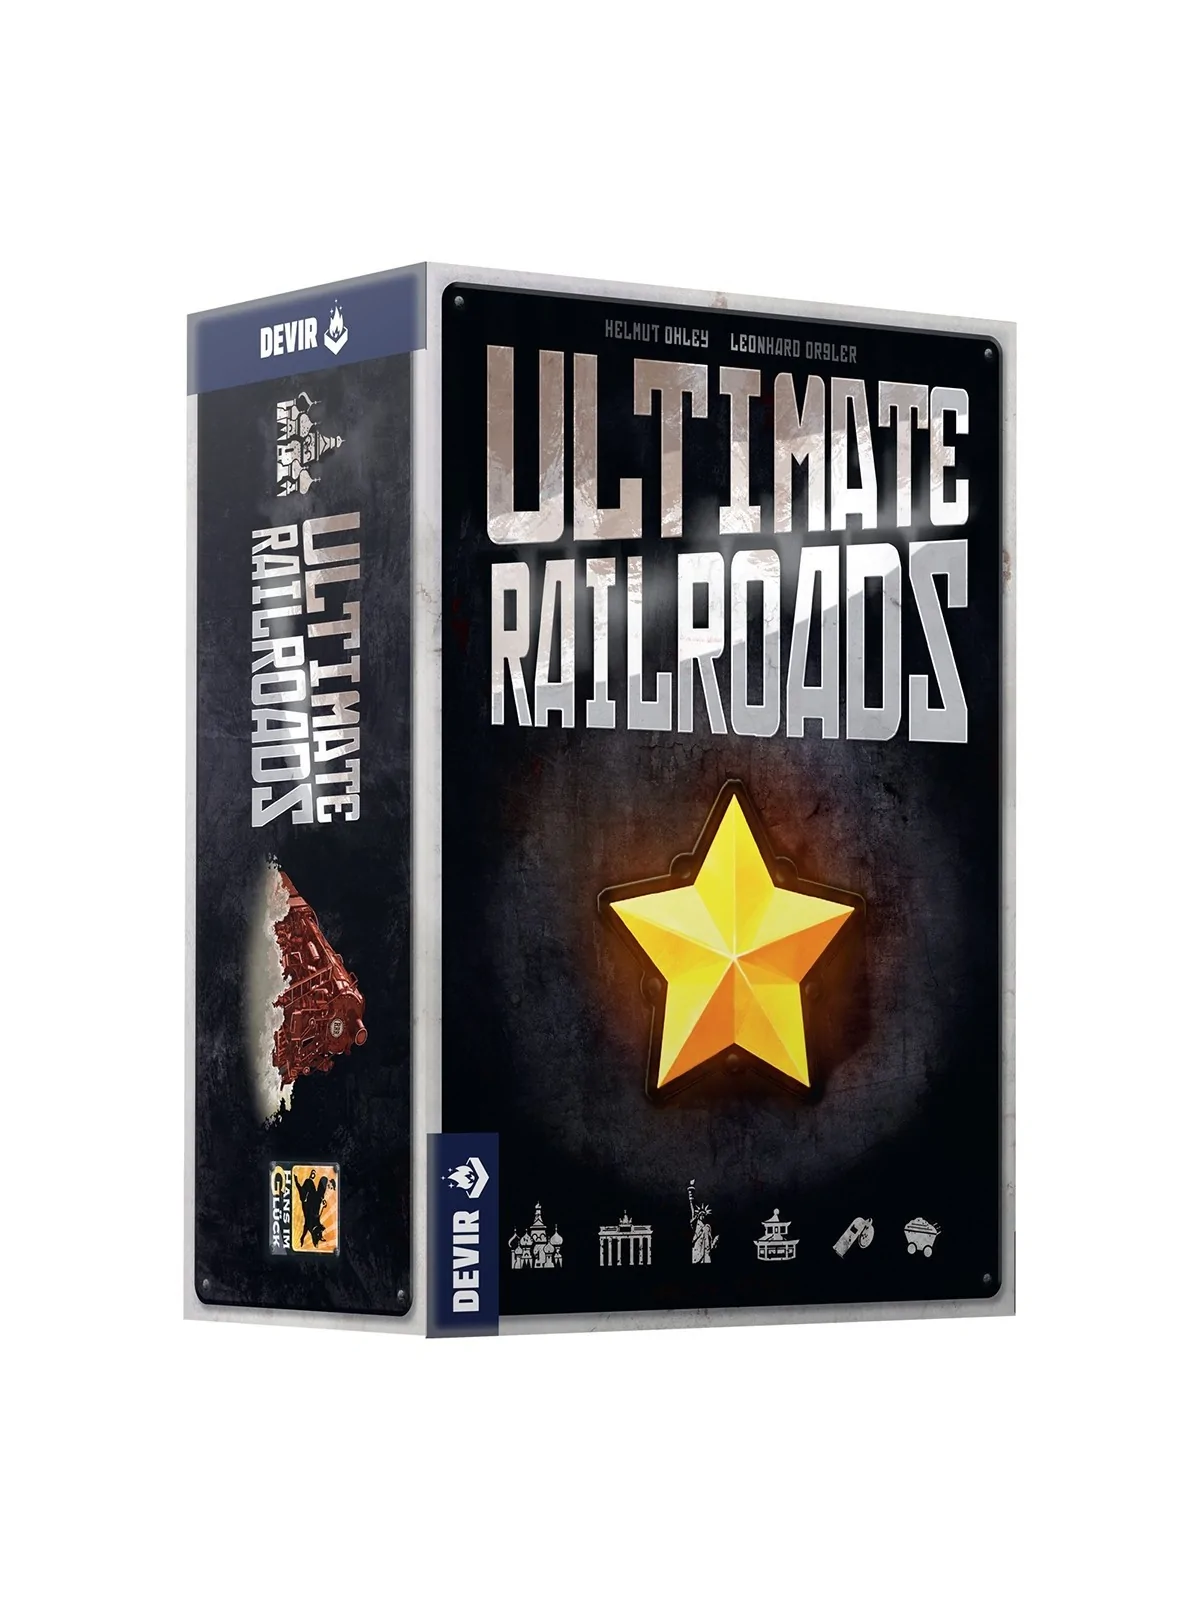 Comprar Ultimate RailRoads barato al mejor precio 81,00 € de Devir